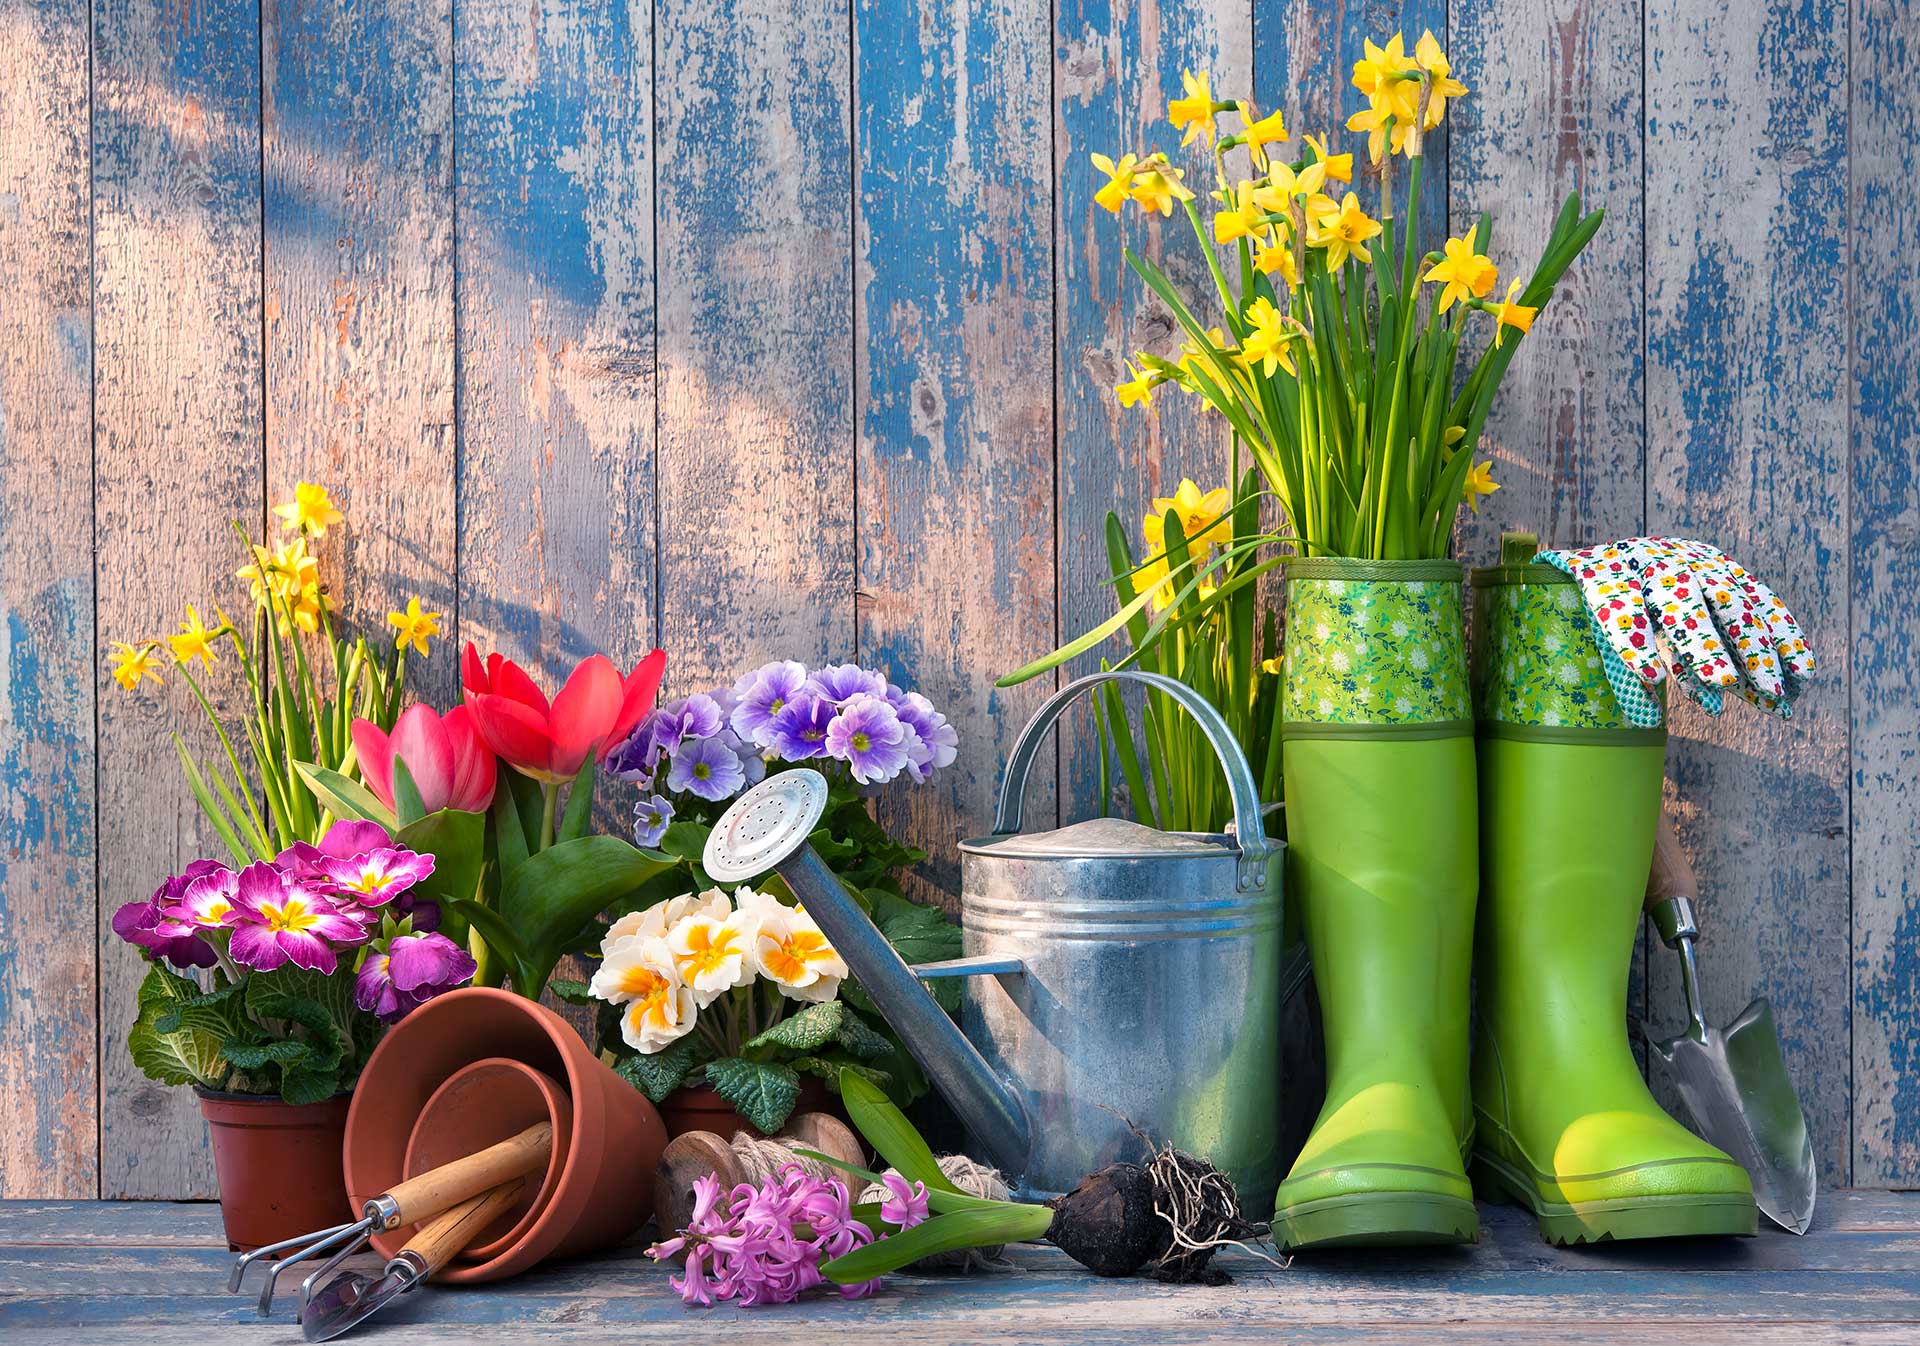 Flowers and gardening equipment